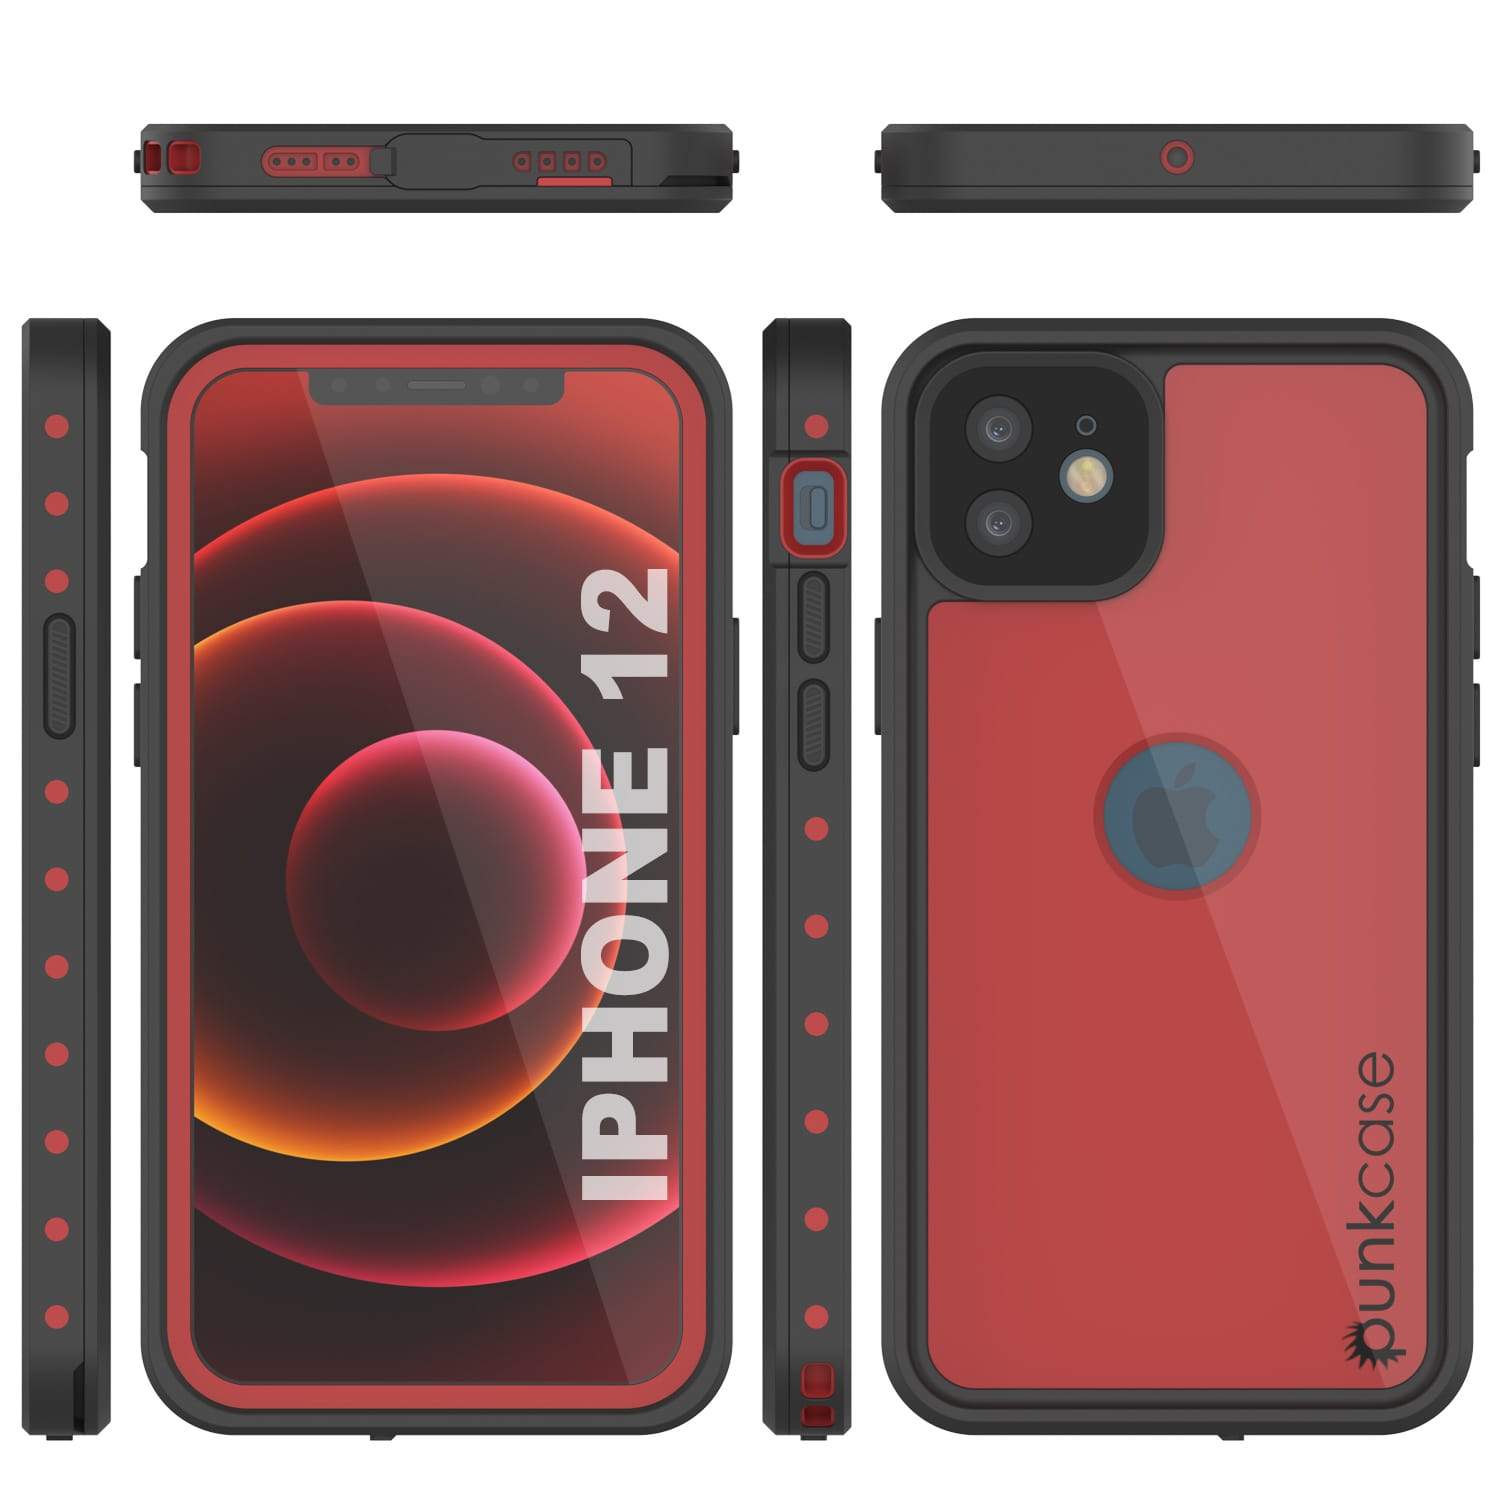 iPhone 12 Waterproof IP68 Case, Punkcase [Red] [StudStar Series] [Slim Fit]